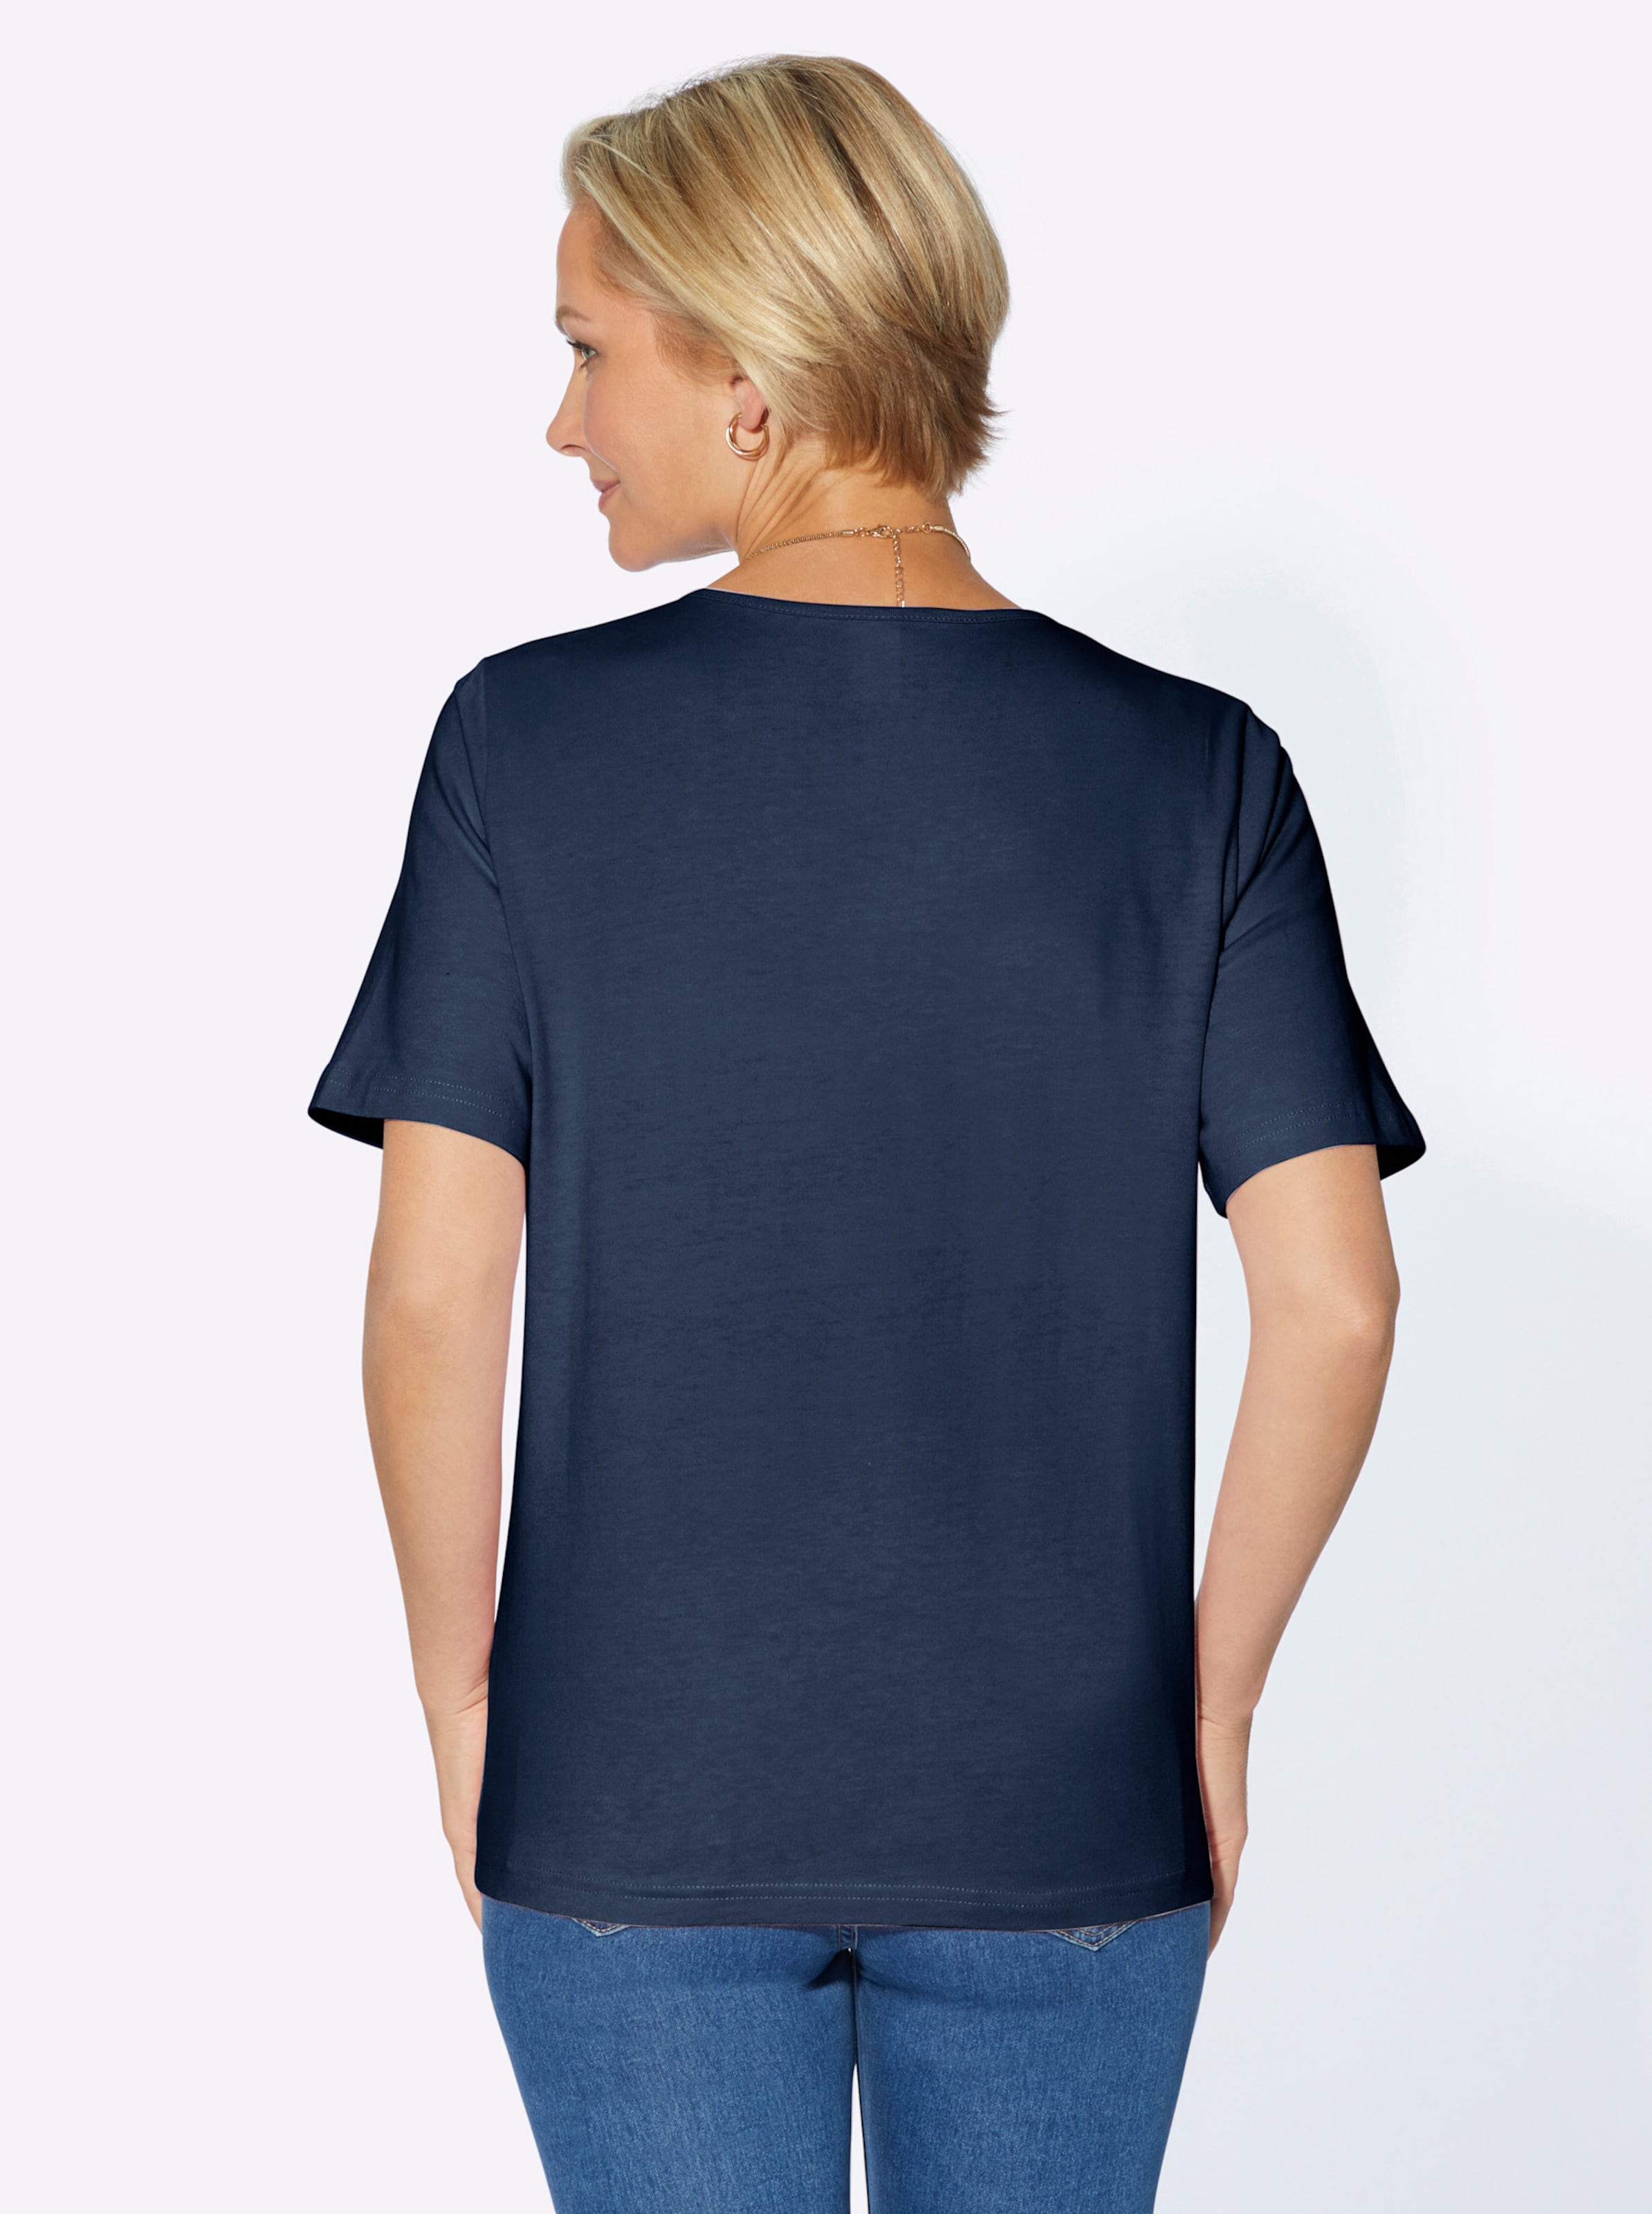 du als günstig Kaufen-Rundhalsshirt in dunkelblau von heine. Rundhalsshirt in dunkelblau von heine <![CDATA[Anziehend schlicht, anziehend schön: Shirt mit schimmernder Satinpaspel am Ausschnitt. In wunderbar hautschmeichelnder Qualität.]]>. 